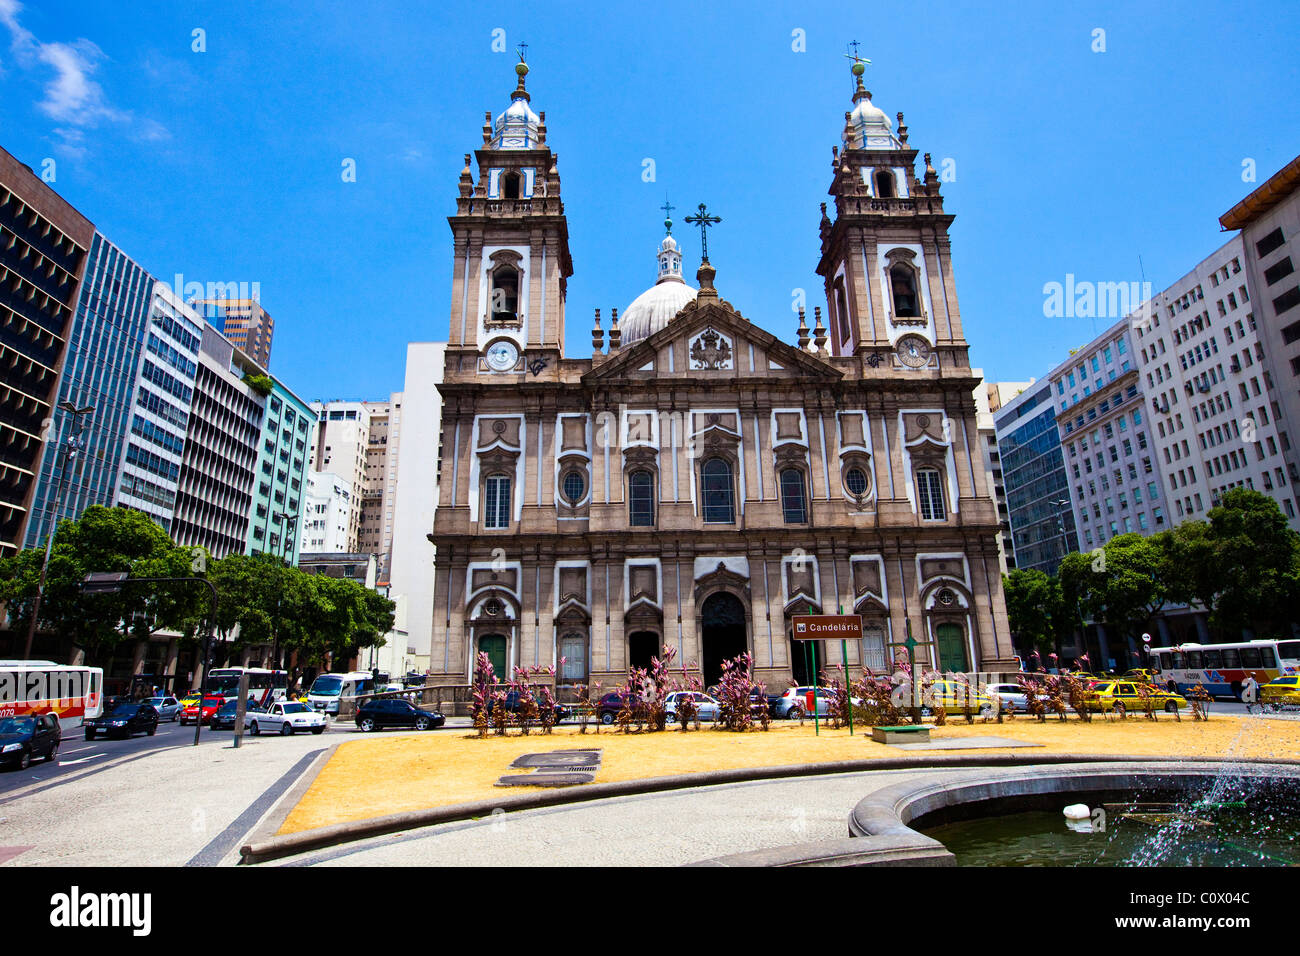 Candelaria o chiesa Igreja da Candelária, Rio de Janeiro, Brasile Foto Stock